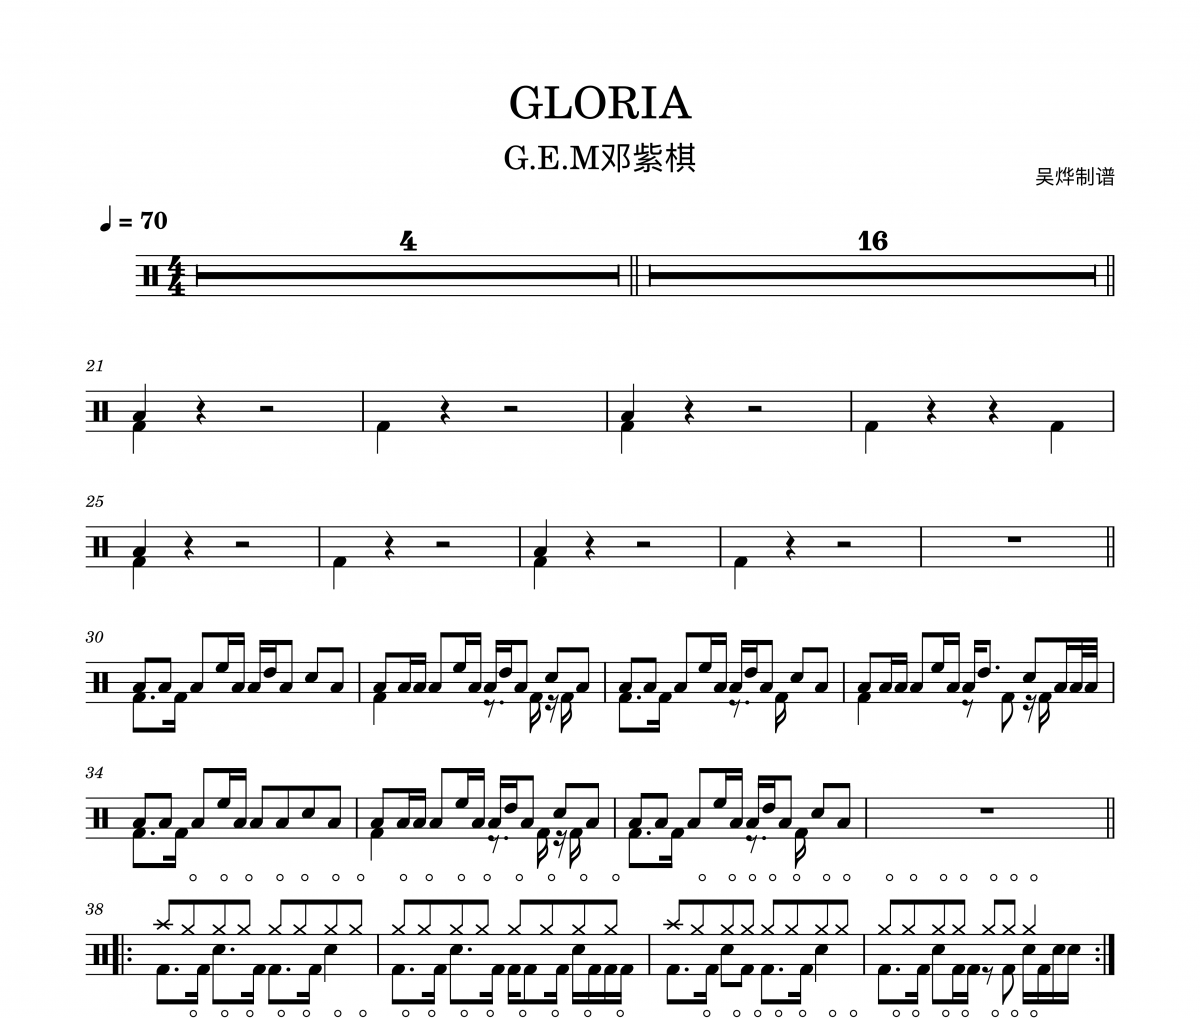 邓紫棋-Gloria架子鼓|爵士鼓|鼓谱+动态鼓谱视频